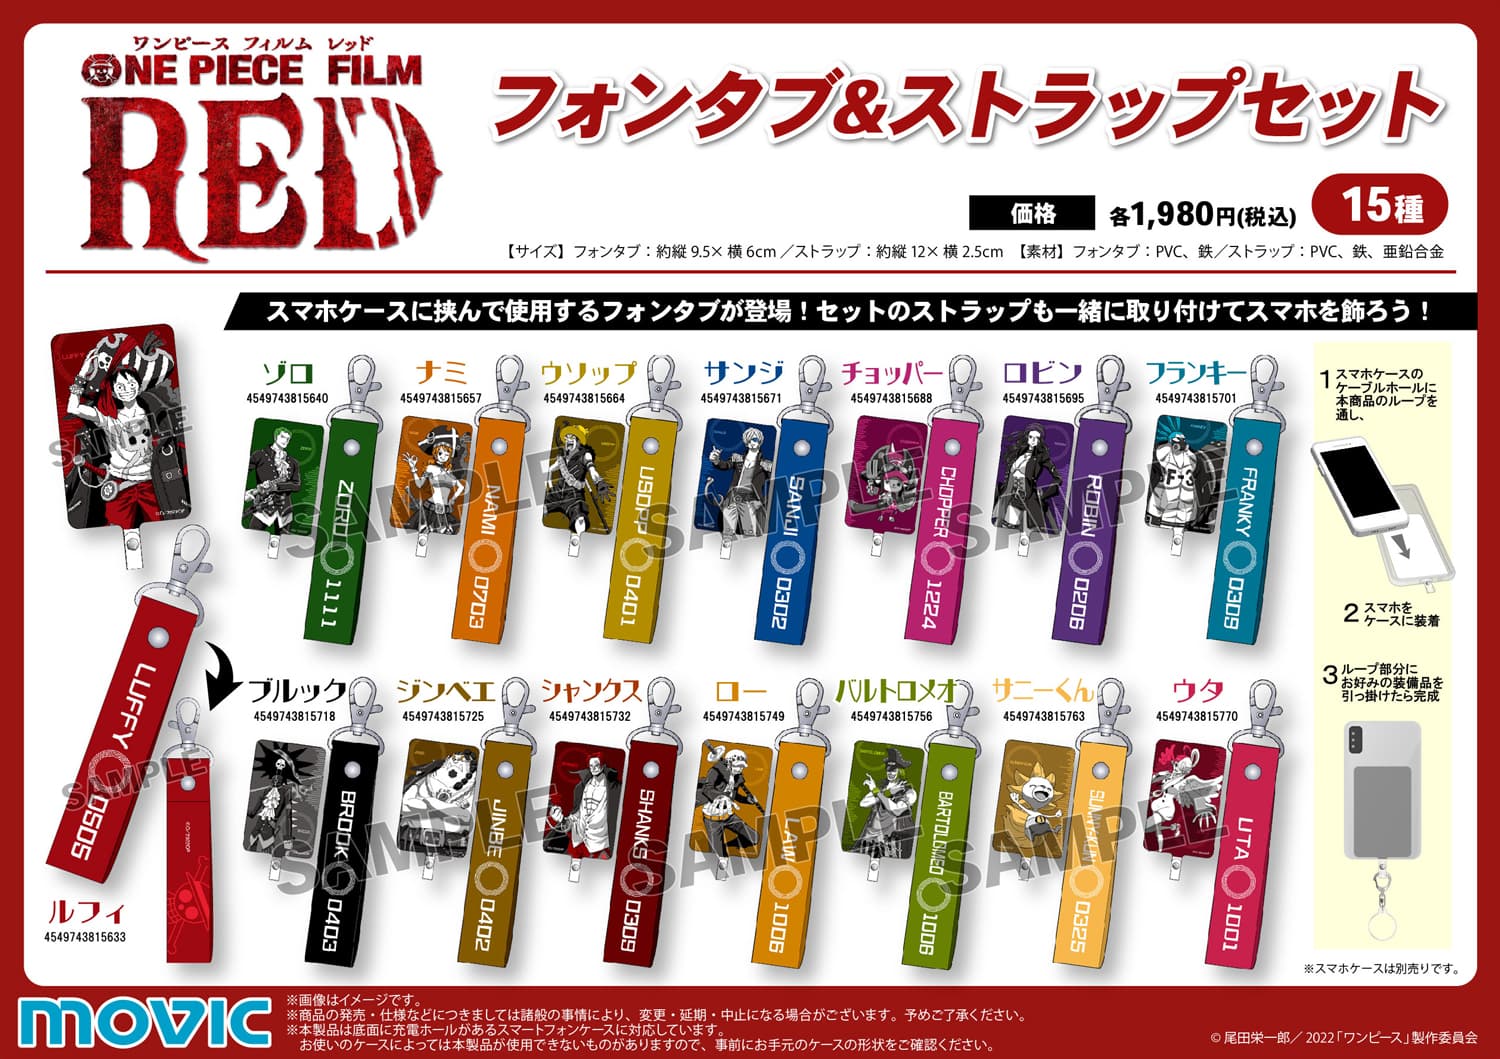 映画「ONE PIECE (ワンピース)」ウタのライブグッズセット 12月発売!